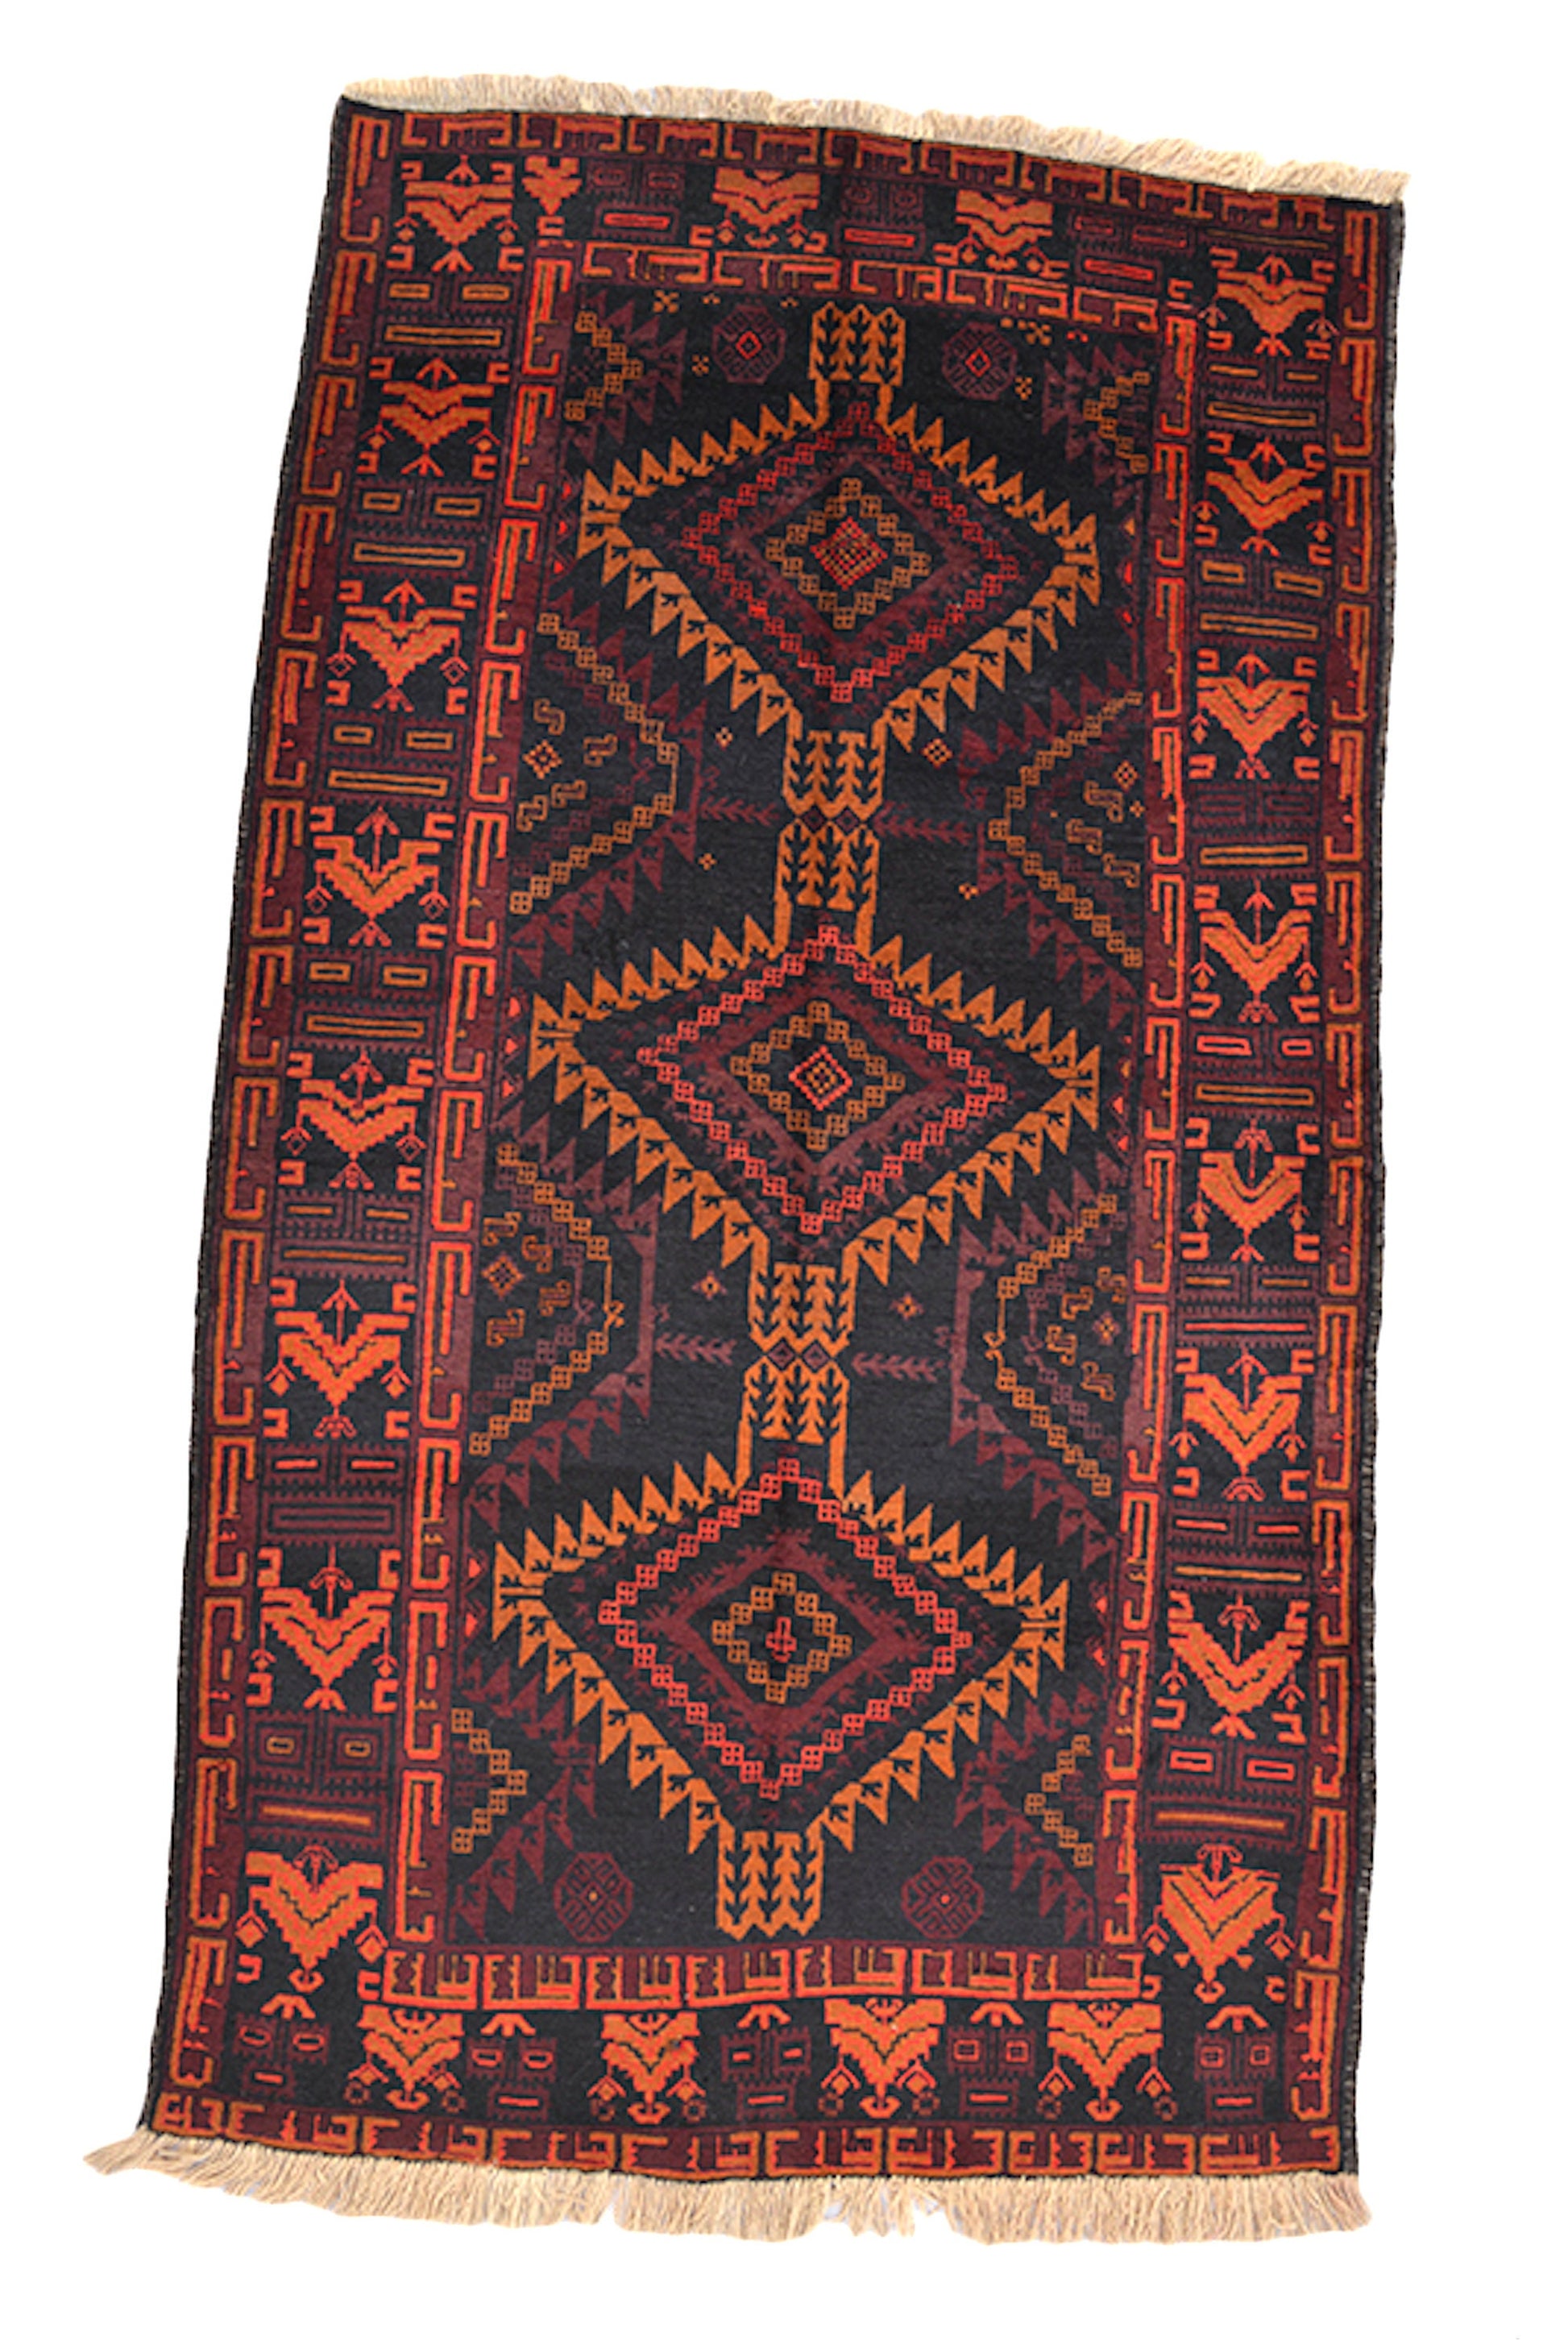 Black Handmade Rug | Wool Rug | 4 x 7 Rug | Orange Black Rug | Geometric Tribal Rug | Vintage Afghan Rug